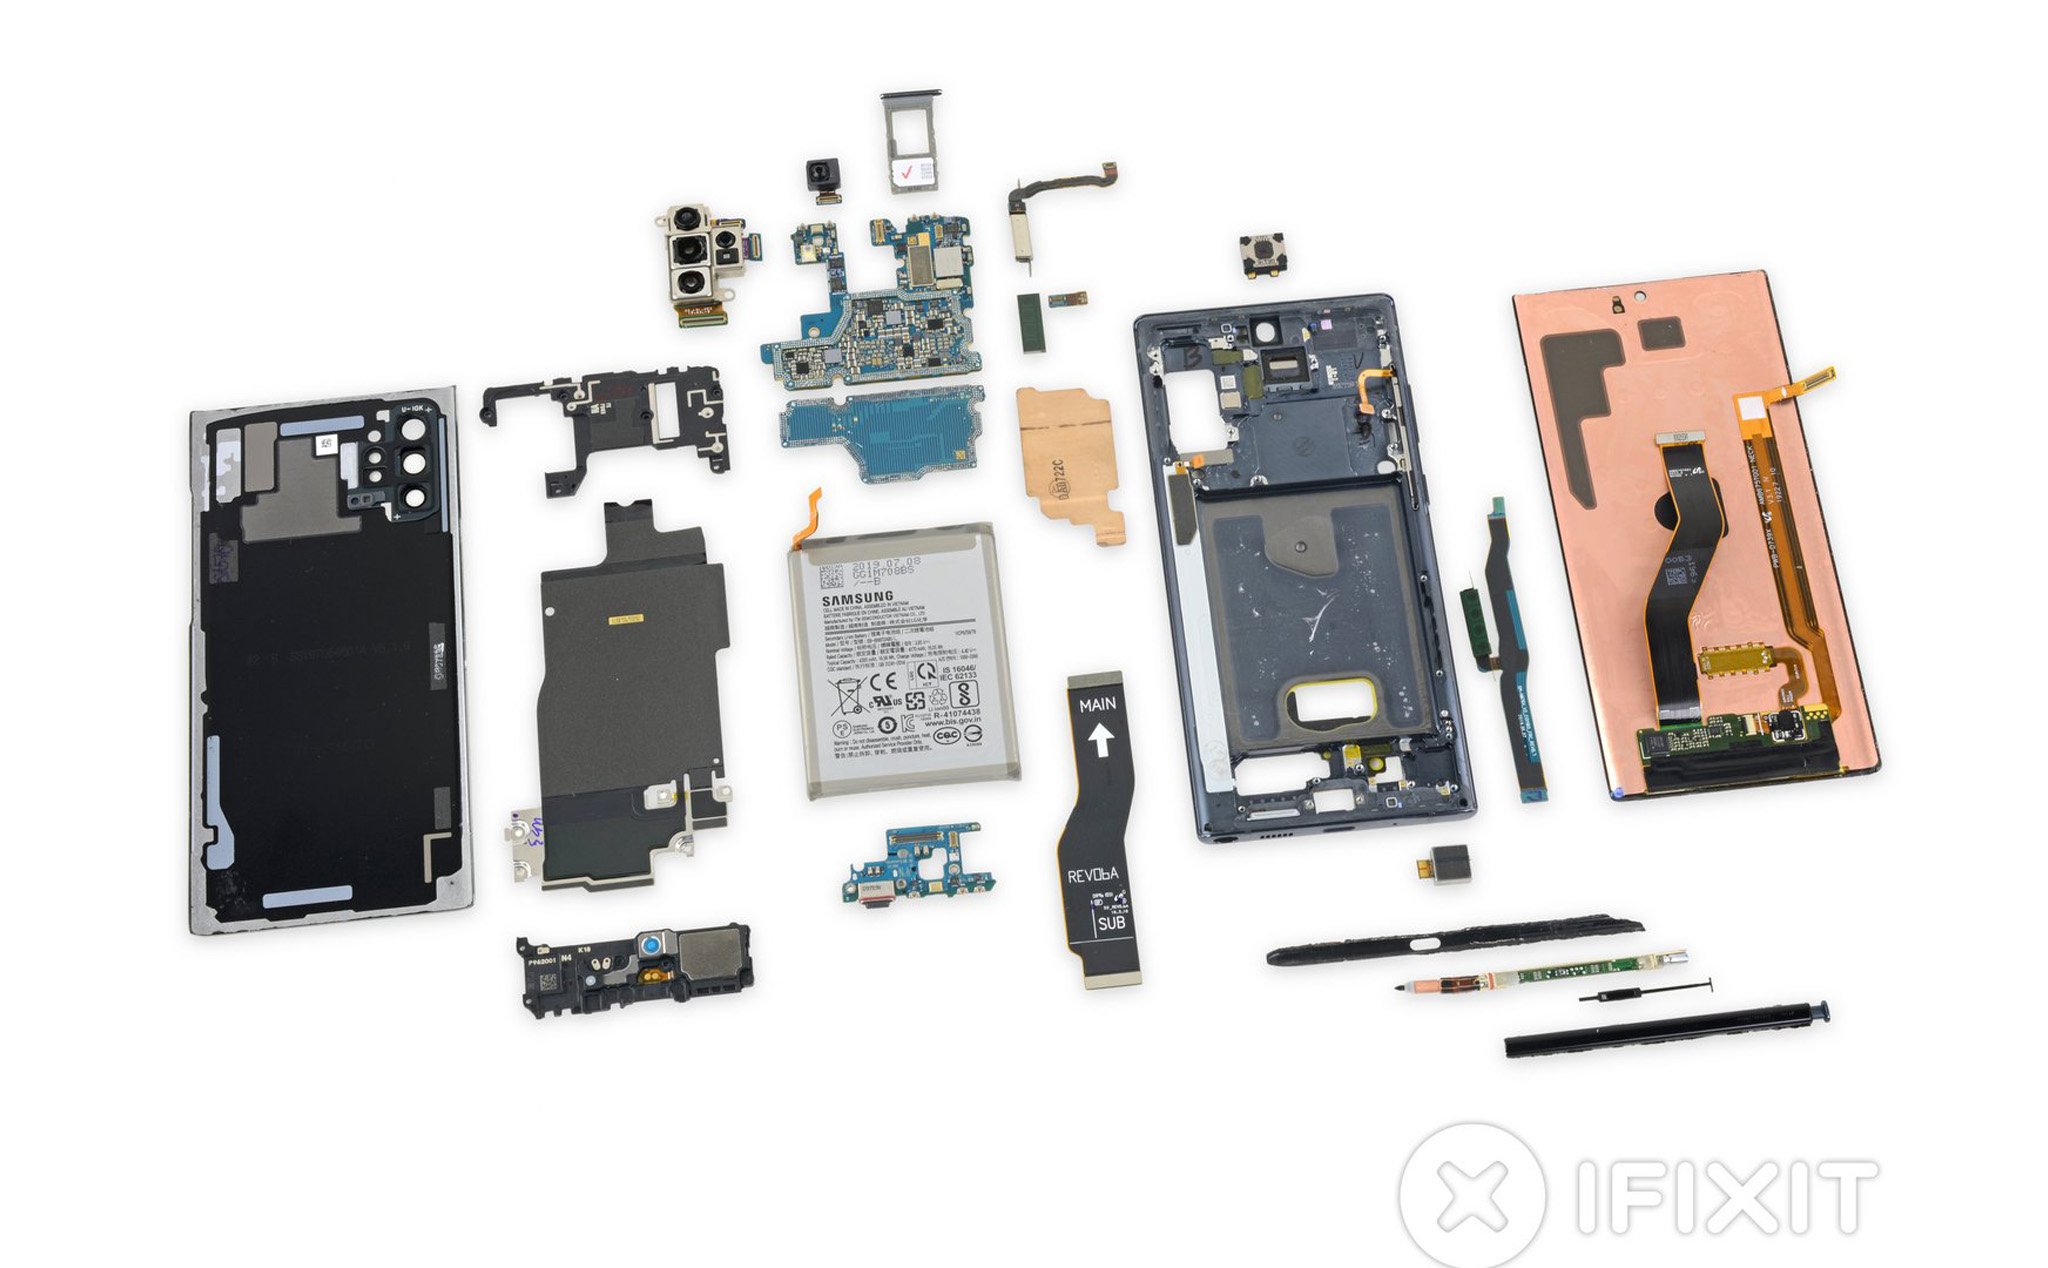 iFixit chấm Galaxy Note 10+ 3/10, nói muốn sửa chữa phải tháo tung cả chiếc máy ra